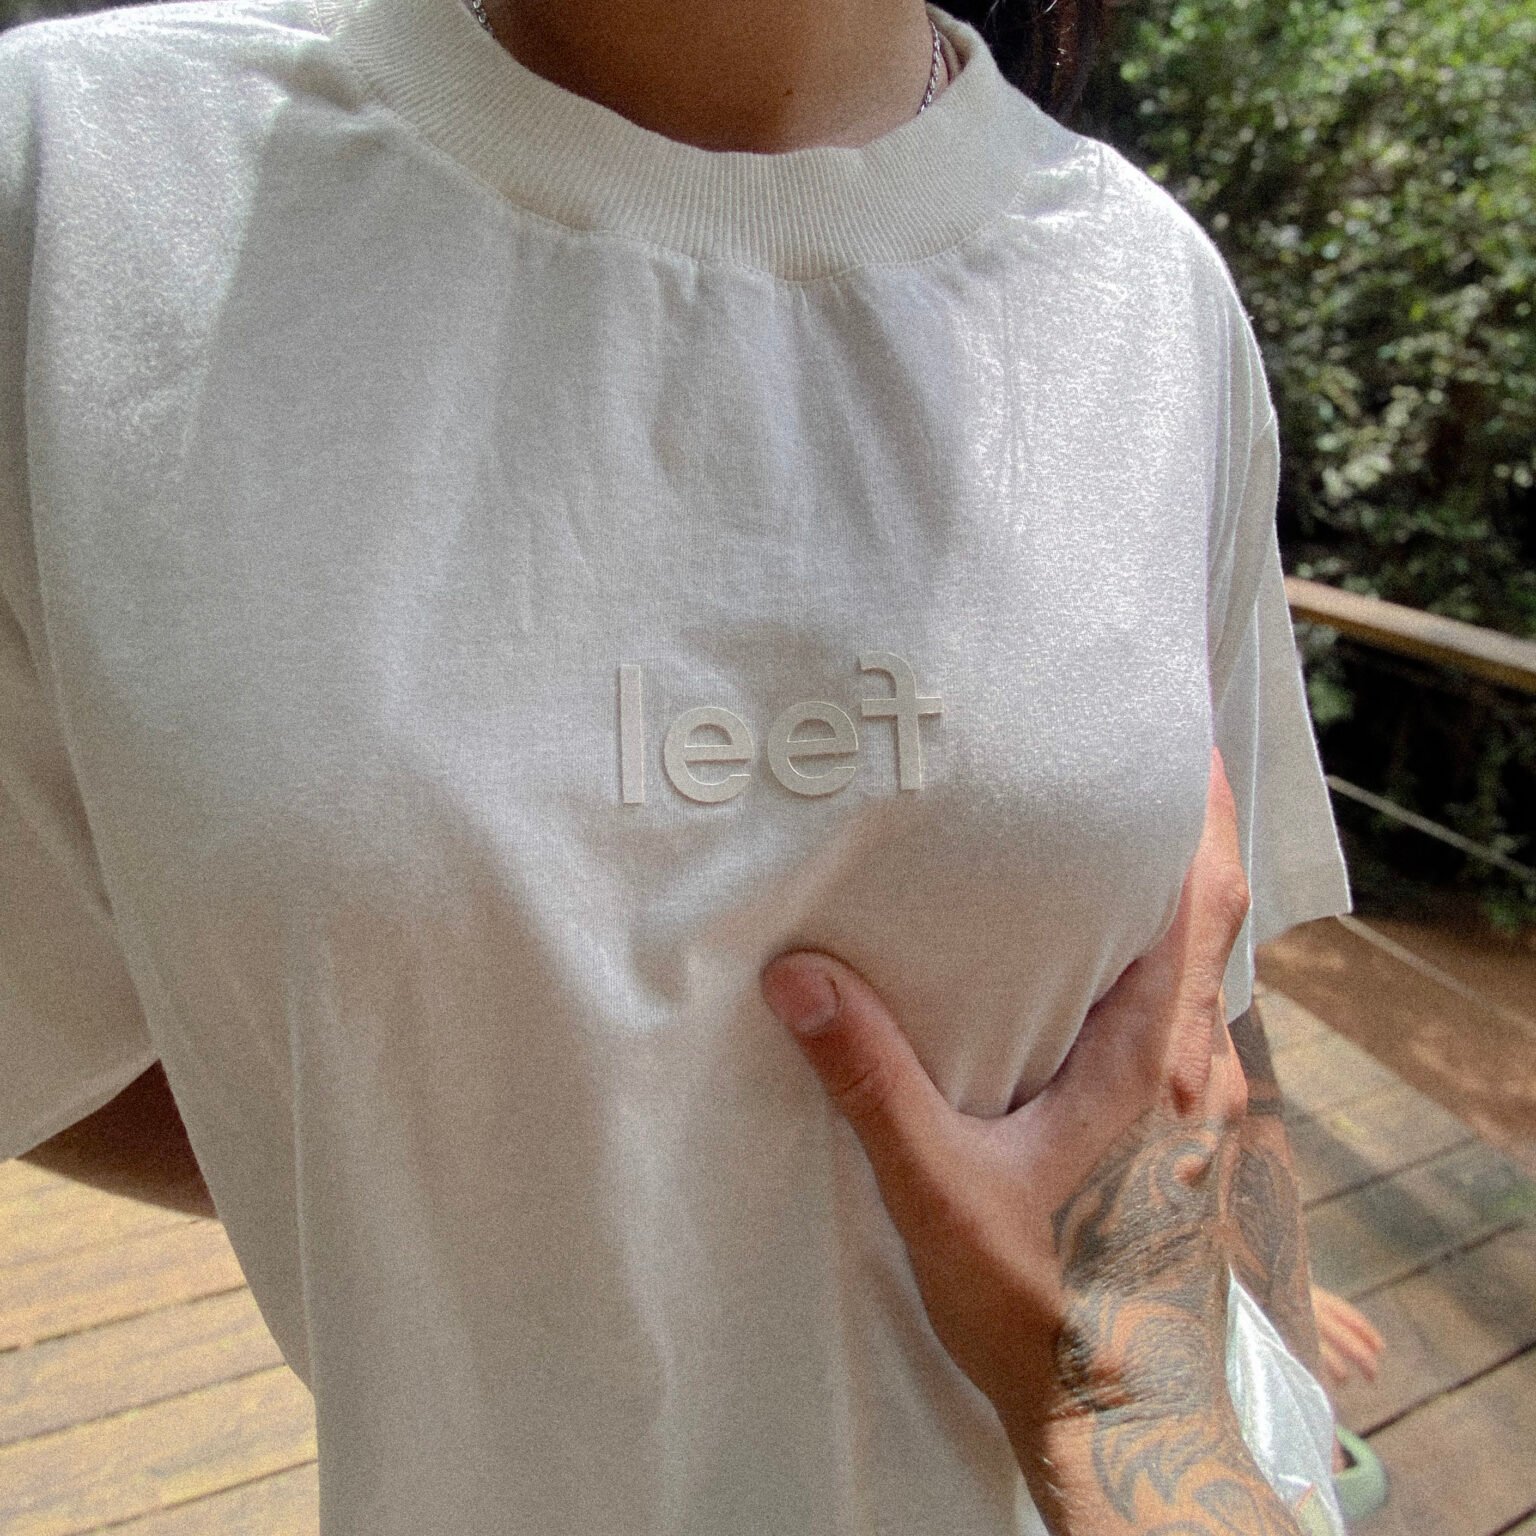 camiseta leef off white alto relevo